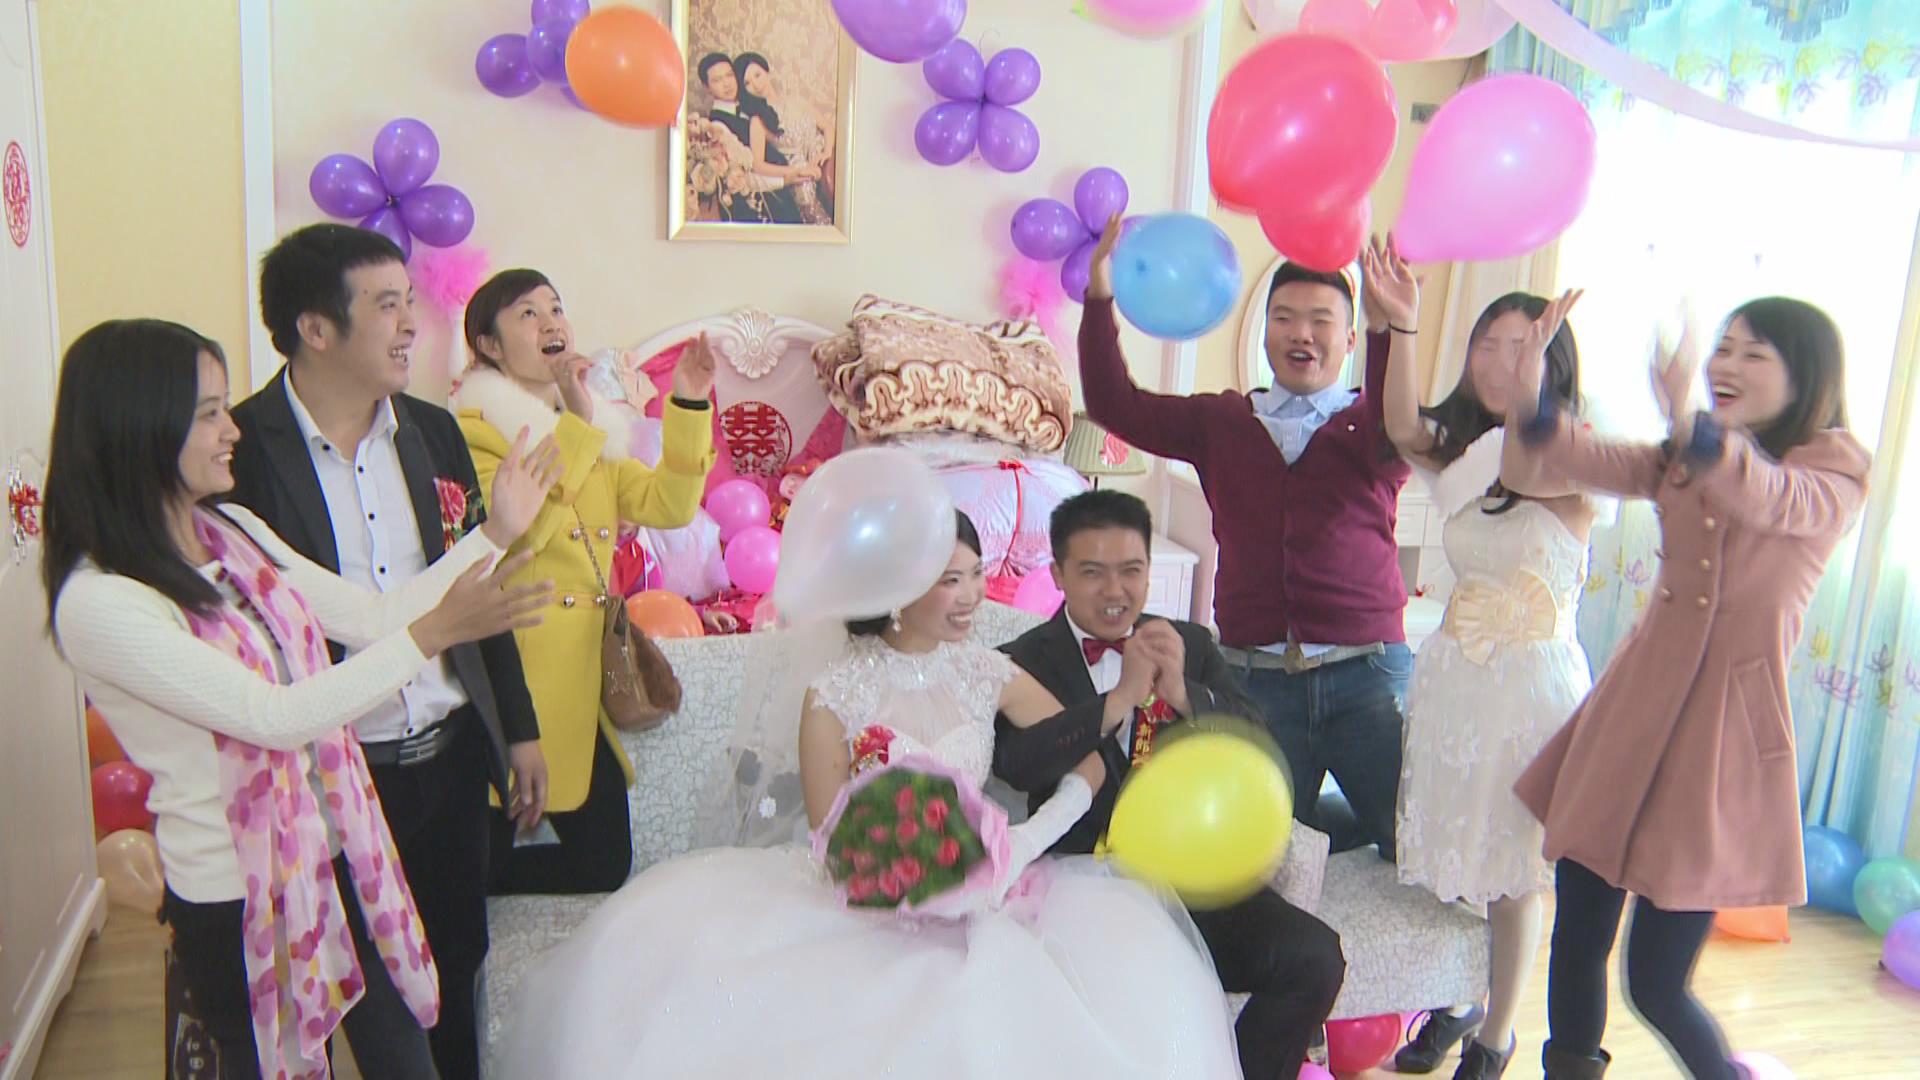 全部在恭城取景完成的一部婚礼微电影：幸福港湾266 / 作者:北辰 / 帖子ID:99859